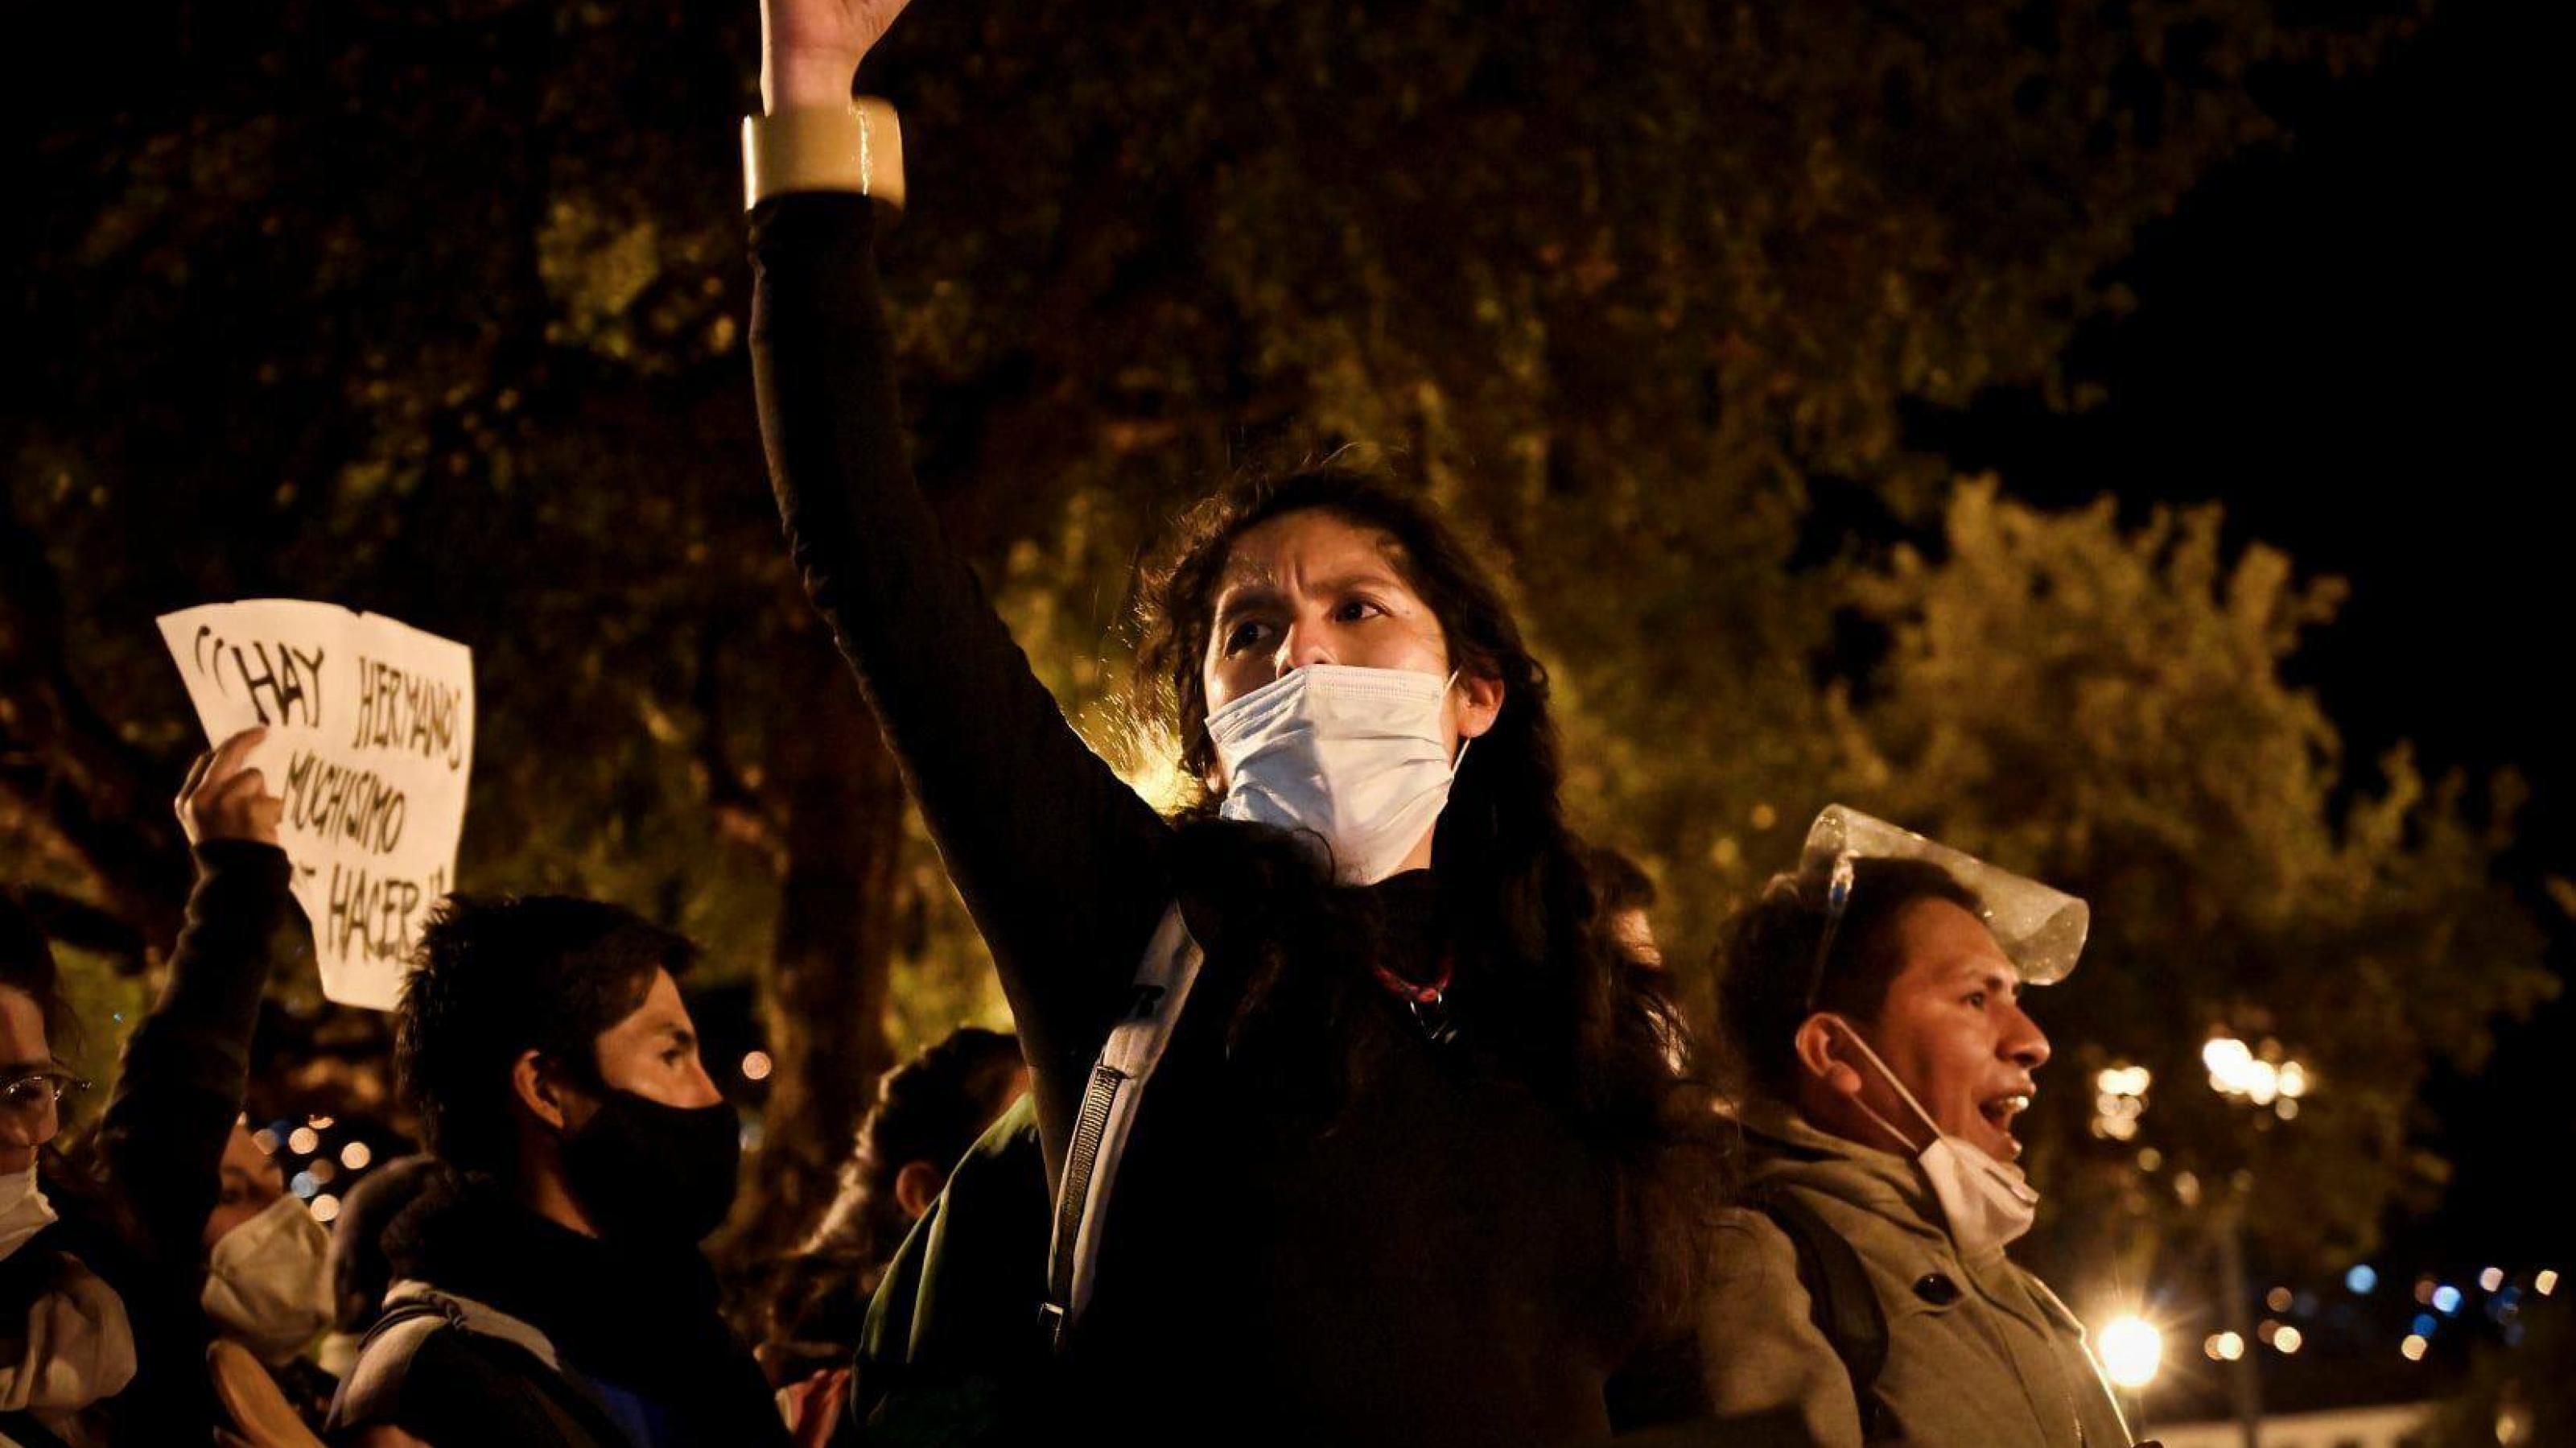 Junge schwarzgekleidete Frau mit weißem Mundschutz hält Hand kämpferisch in die Höhe. Es ist Nacht. Im Hintergrund Bäume, Laternen und weitere Demonstrierende.